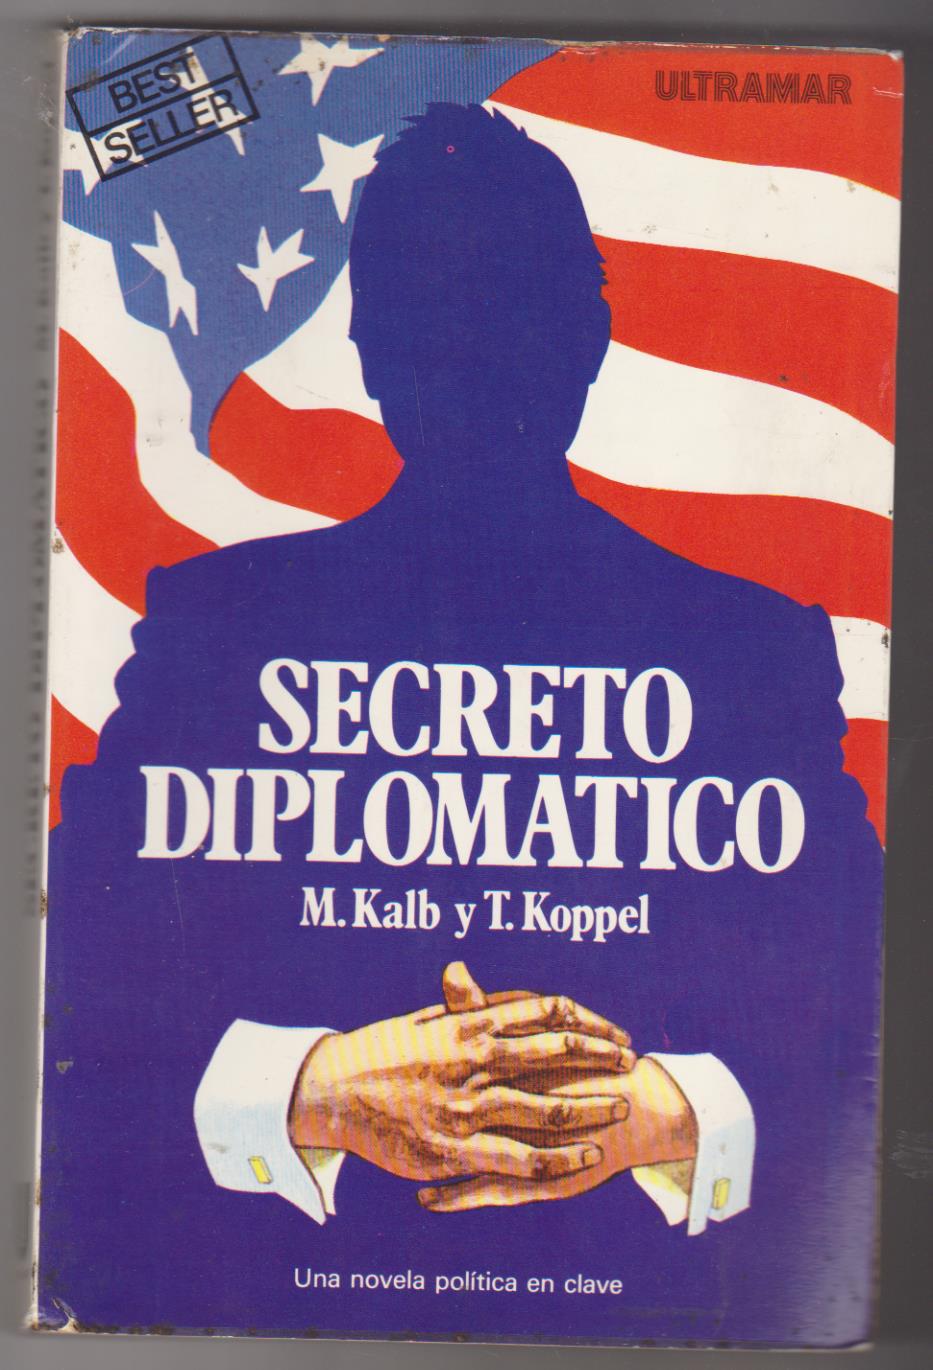 M. Kalb y T. Koppel. Secreto Diplomático. 1ª Edición Ultramar 1979. SIN USAR